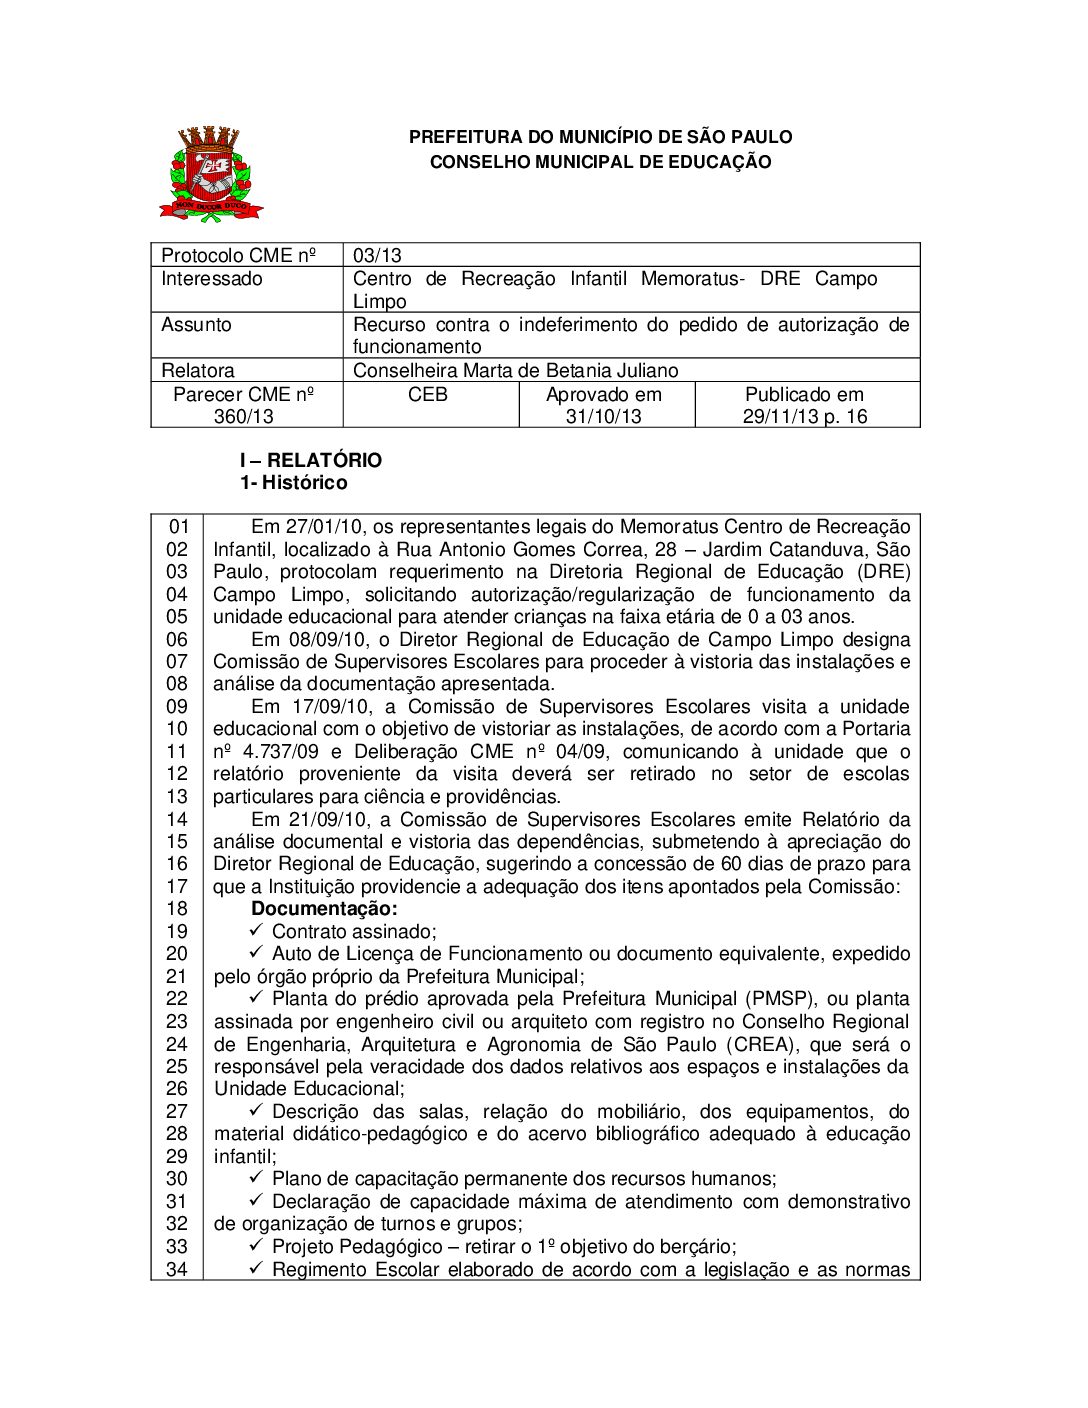 Parecer CME nº 360/2013 - Centro de Recreação Infantil Memoratus (DRE Campo Limpo) - Recurso contra o indeferimento do pedido de autorização de funcionamento 